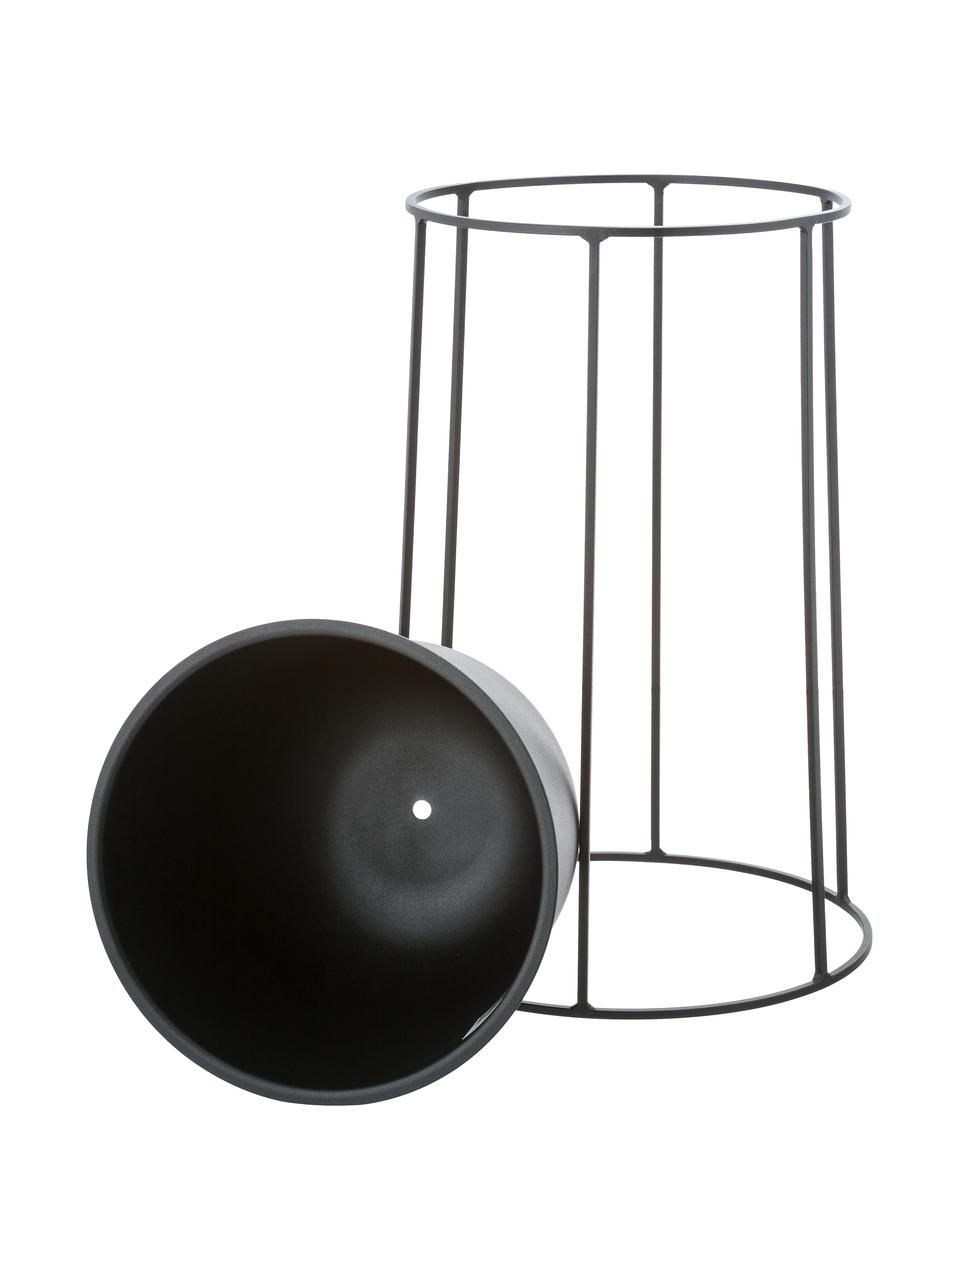 Großer Pflanztopf Wire Pot aus Stahl, Stahl, pulverbeschichtet, Schwarz, Ø 23 x H 17 cm